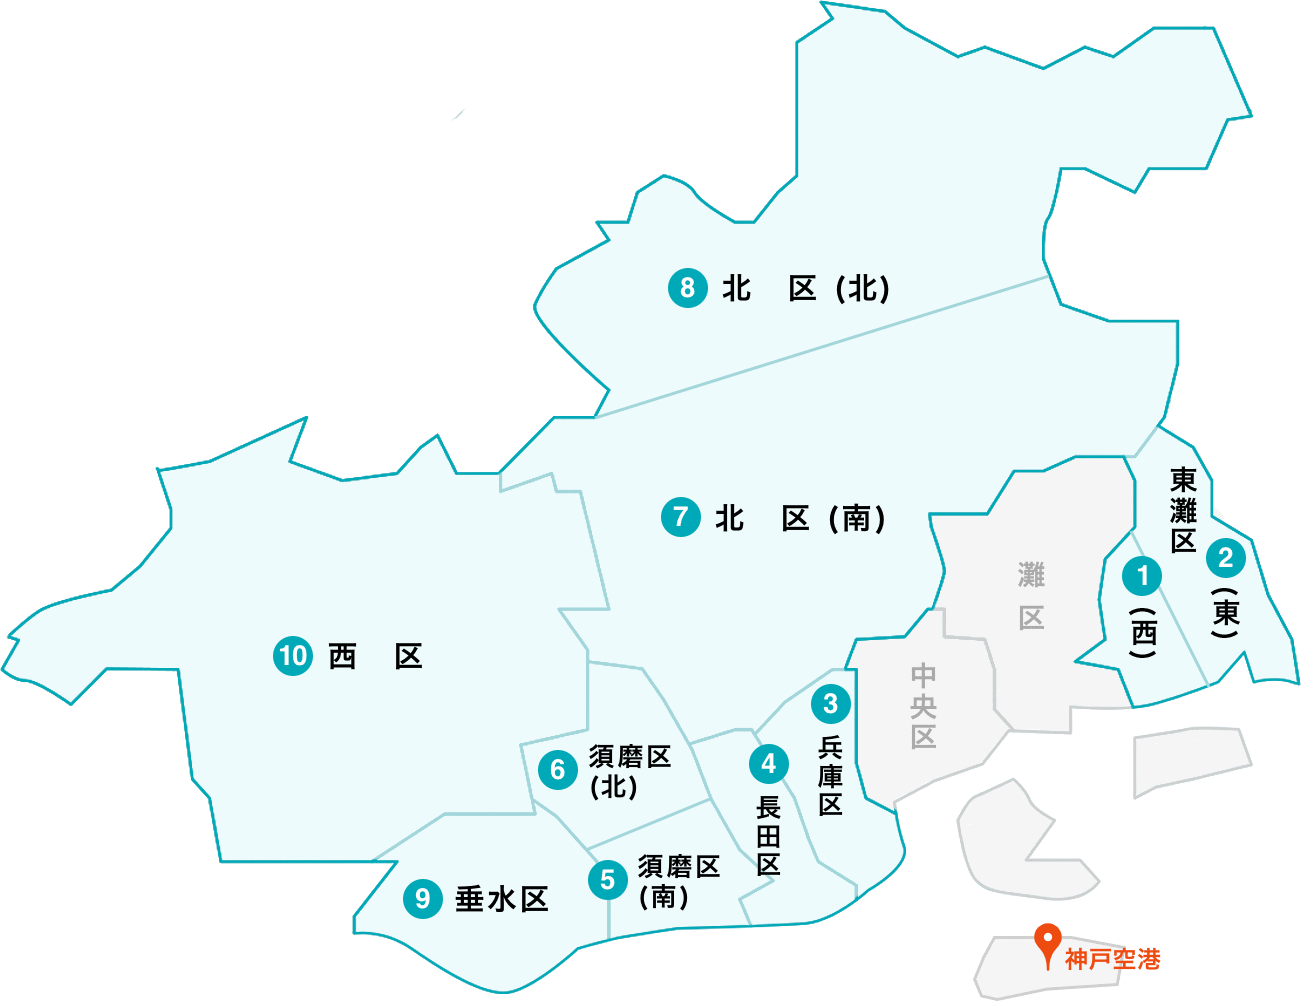 神戸空港 定額送迎タクシー 予約配車で神戸空港 神戸市内間が割安運賃 最大30 以上 Green Nankoh Taxi